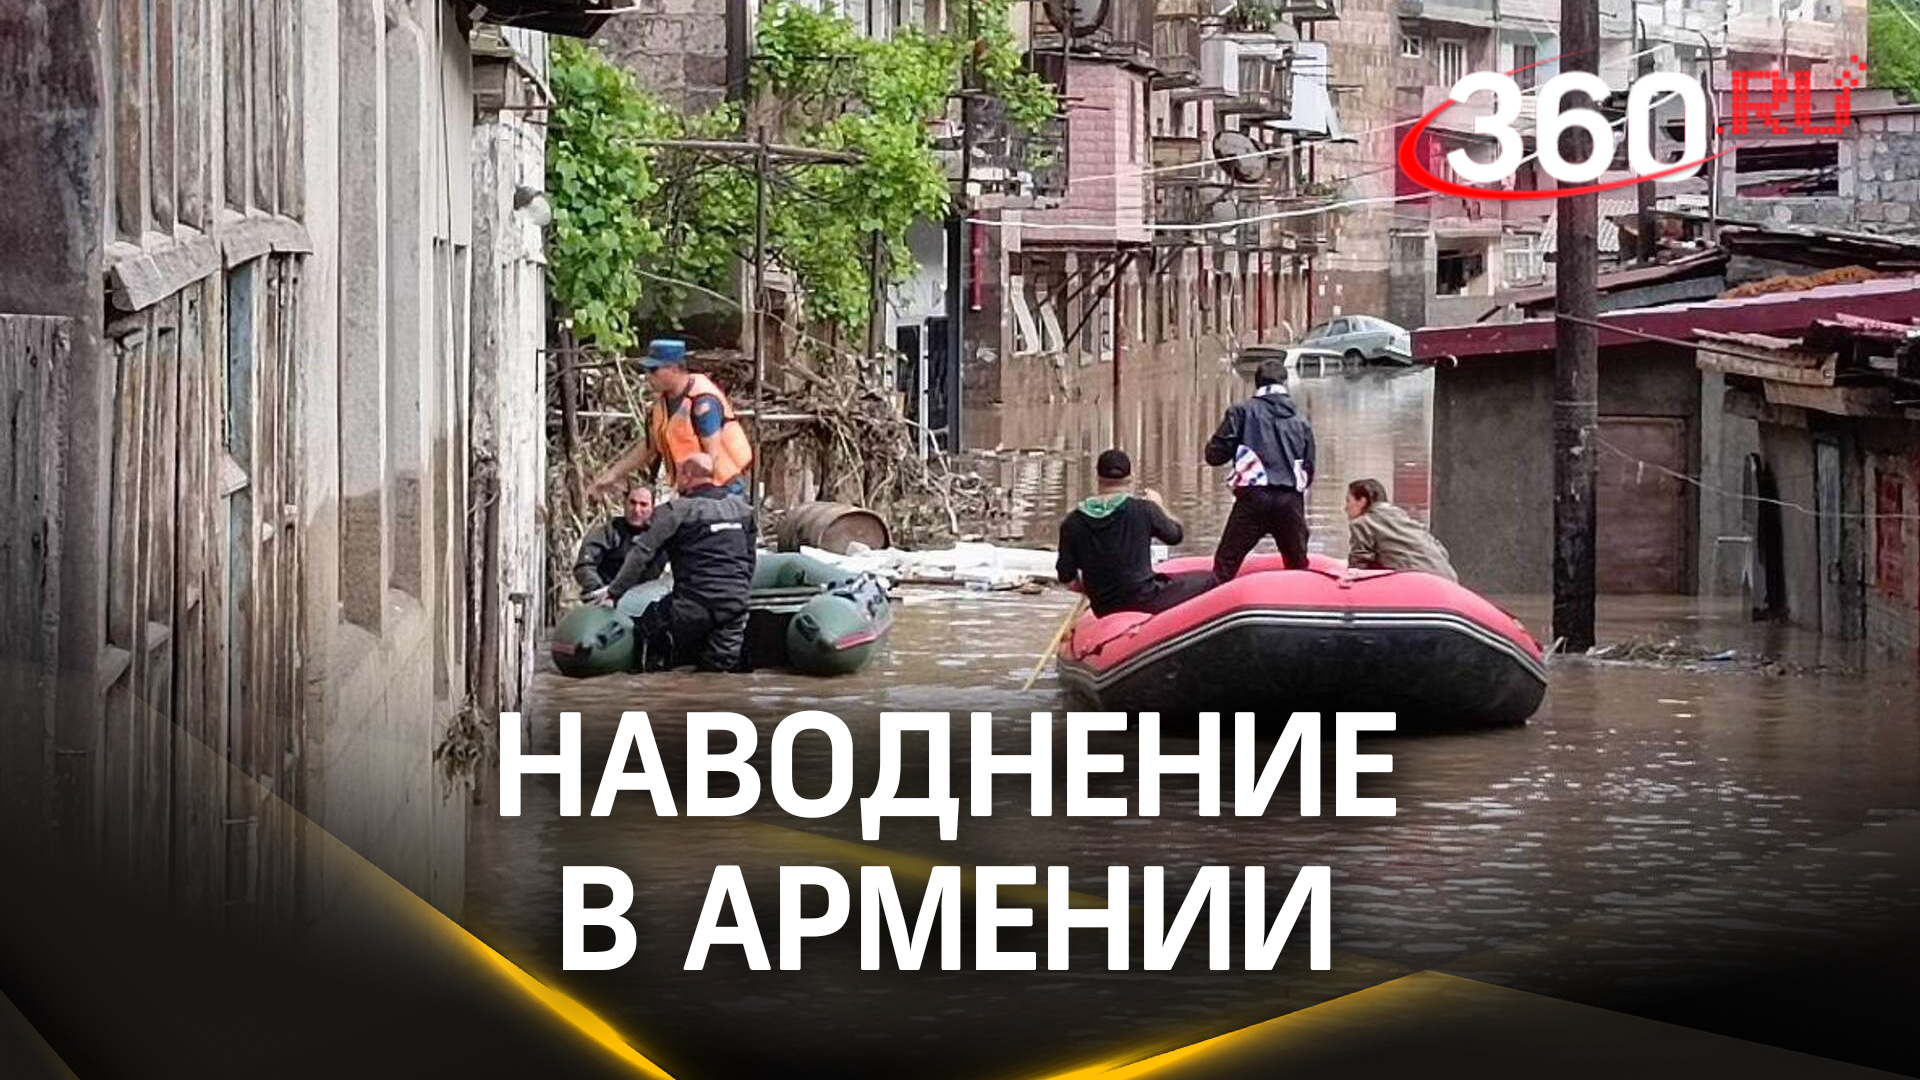 Трое погибших после страшного наводнения в Армении. РФ готова помочь устранить последствия